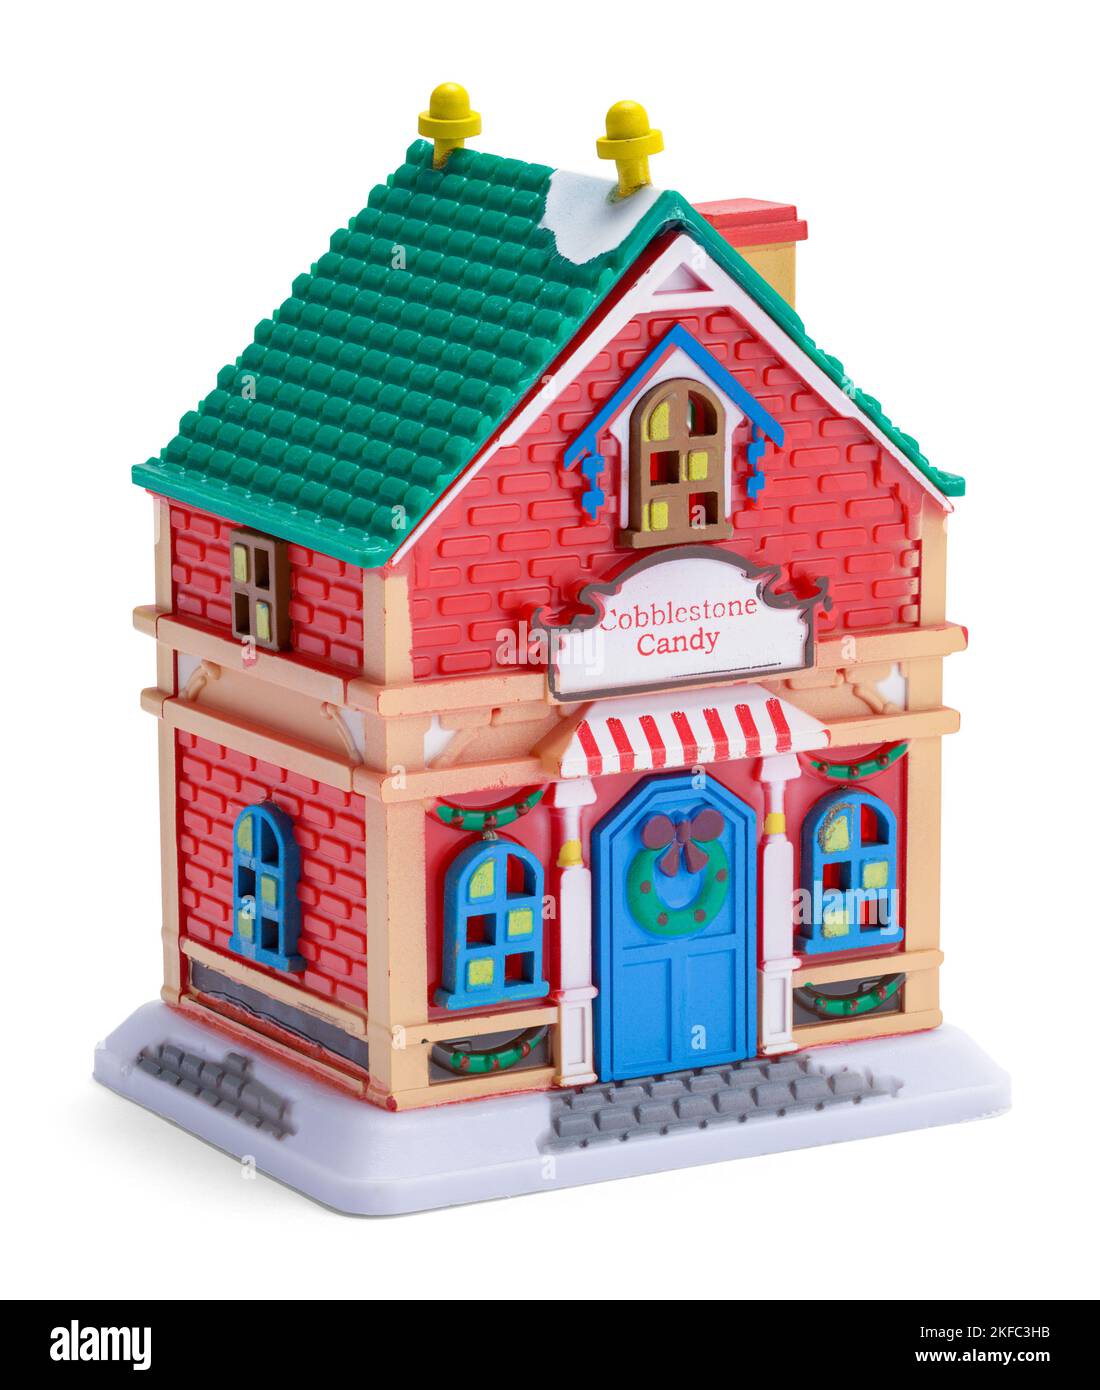 Miniatur Spielzeug Süßigkeiten Store Modell auf Weiß ausgeschnitten. Stockfoto